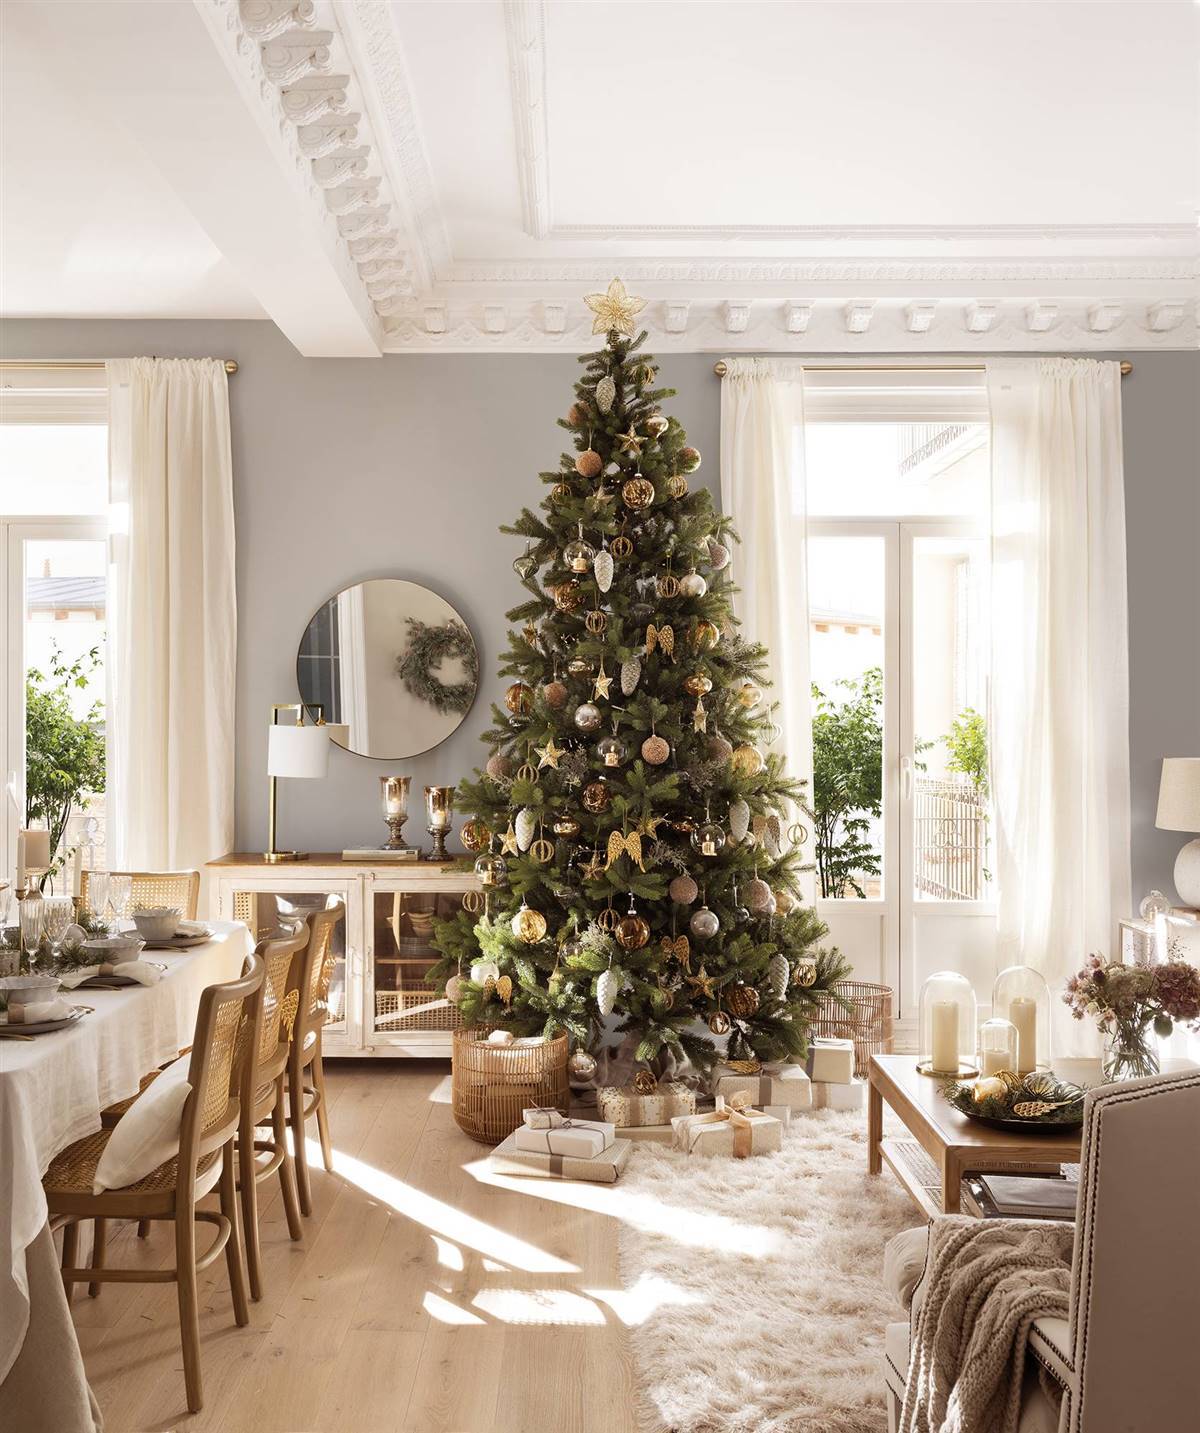 Salón comedor de Navidad con árbol. untitled-panorama4b 5dfb9e5b 1200x1433